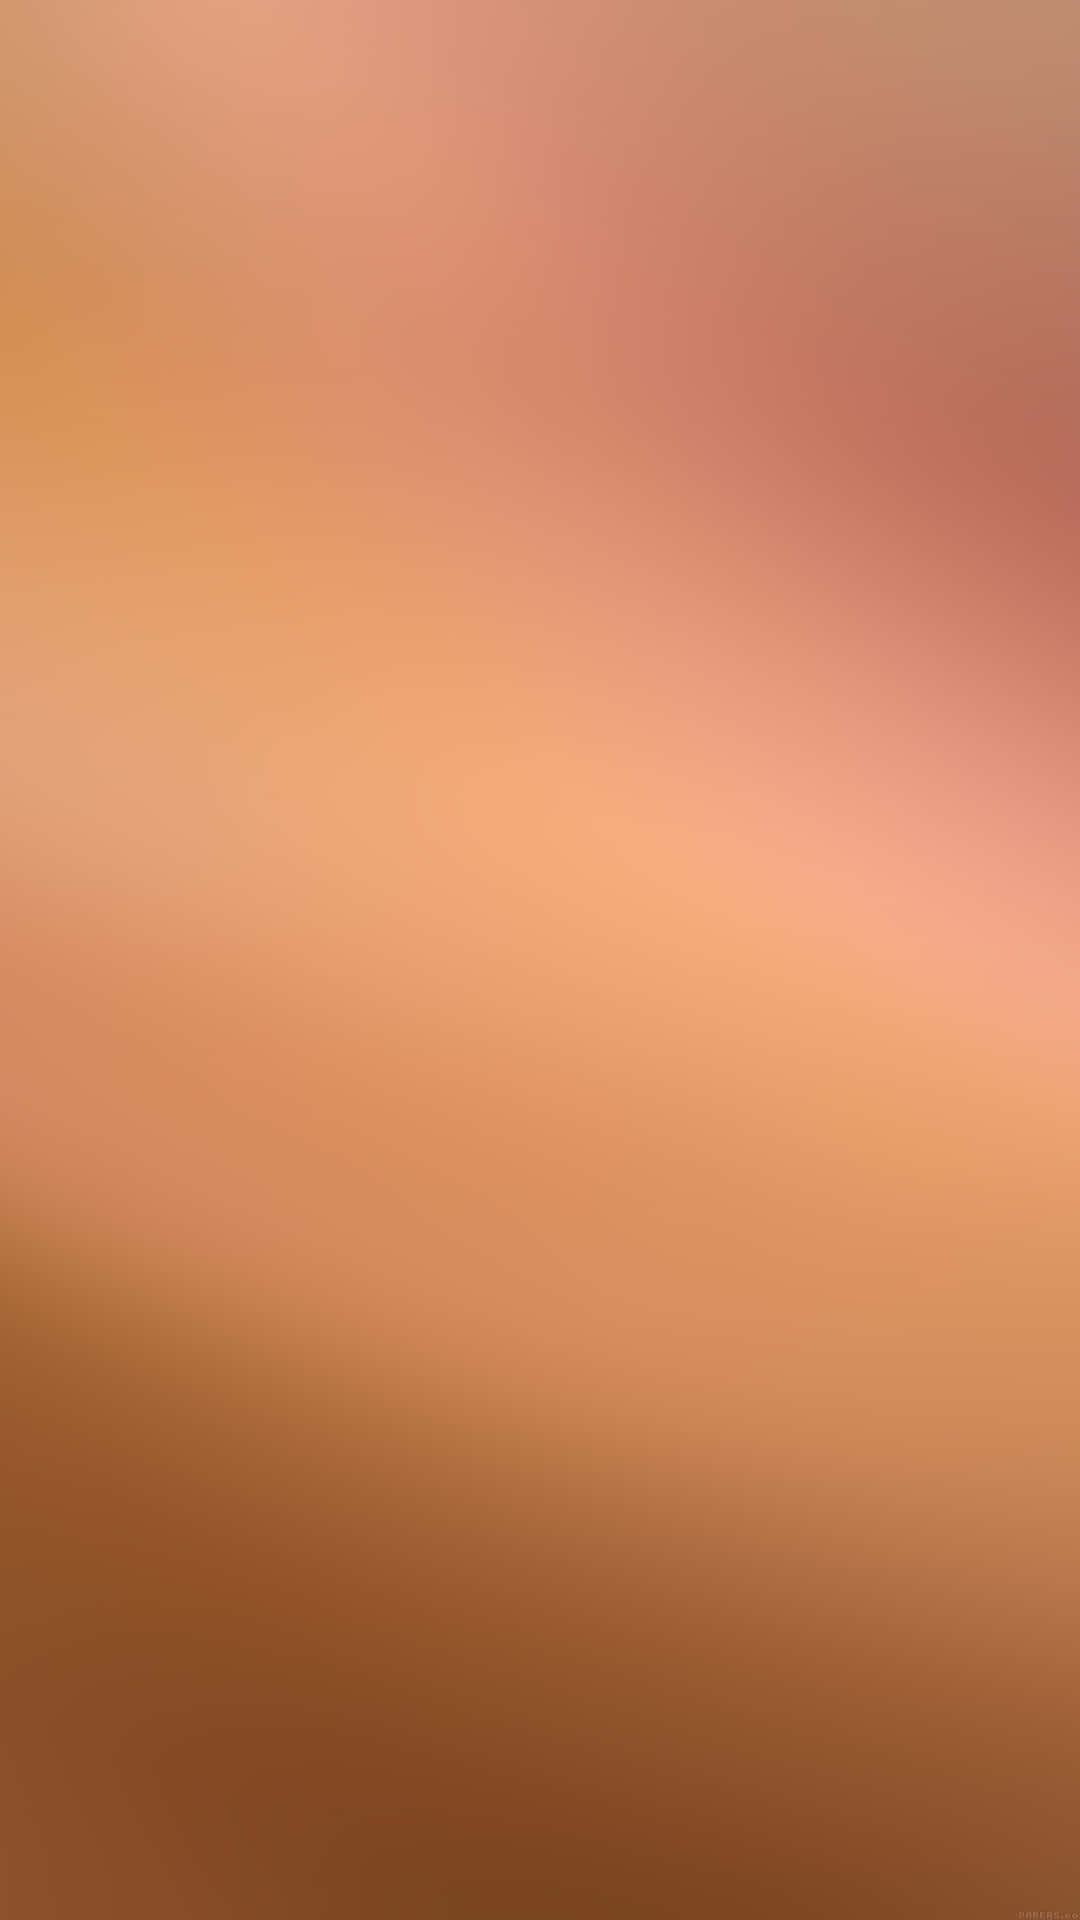 Unamaravillosa Explosión De Colores Cobre Y Marrón. Fondo de pantalla